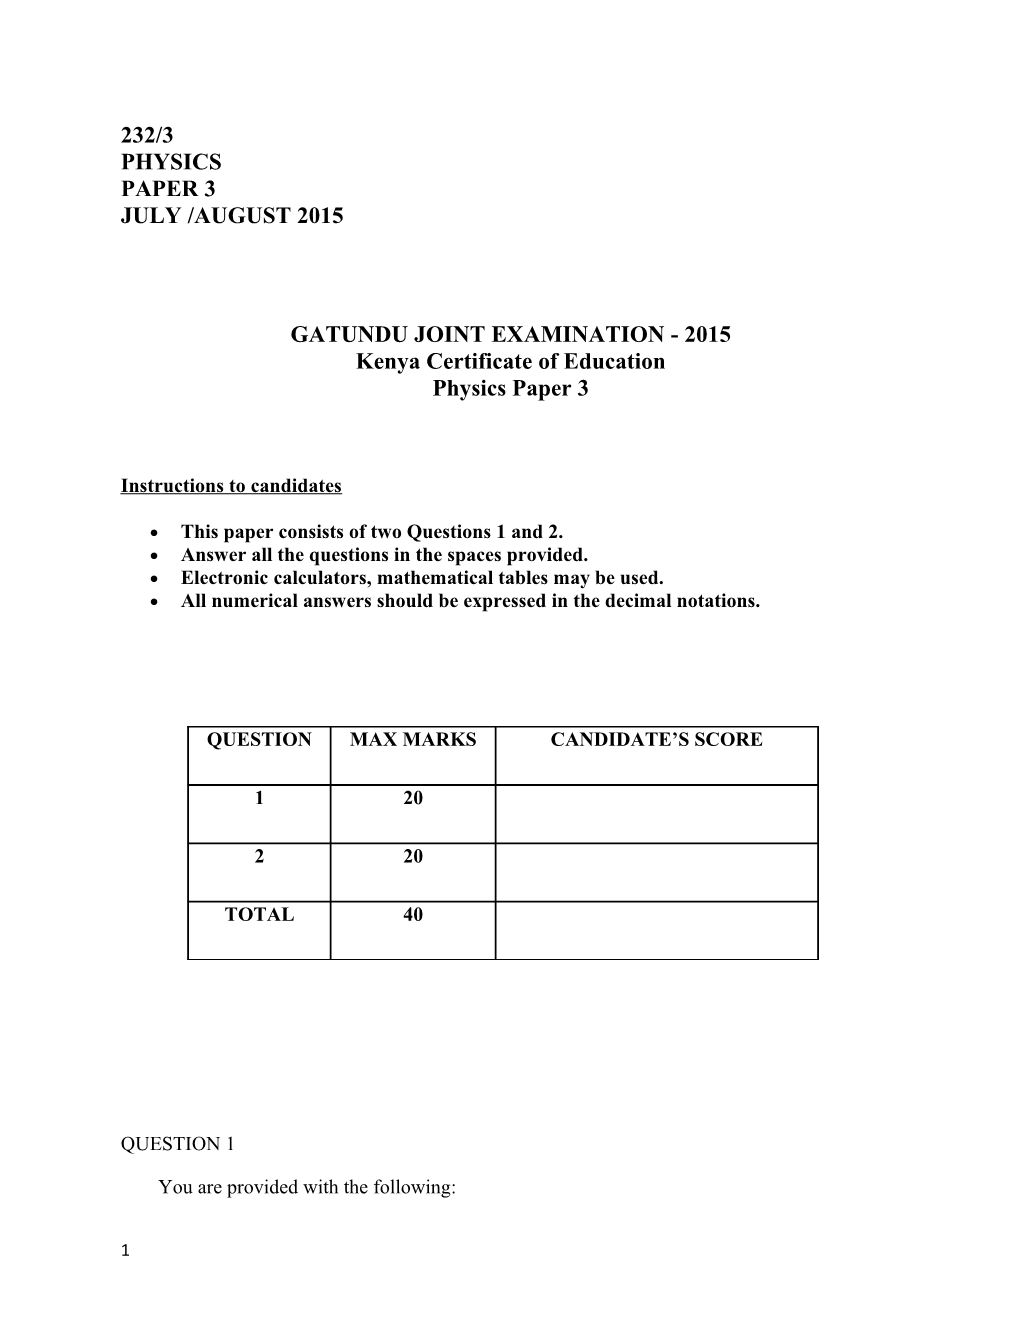 Gatundu Joint Examination - 2015